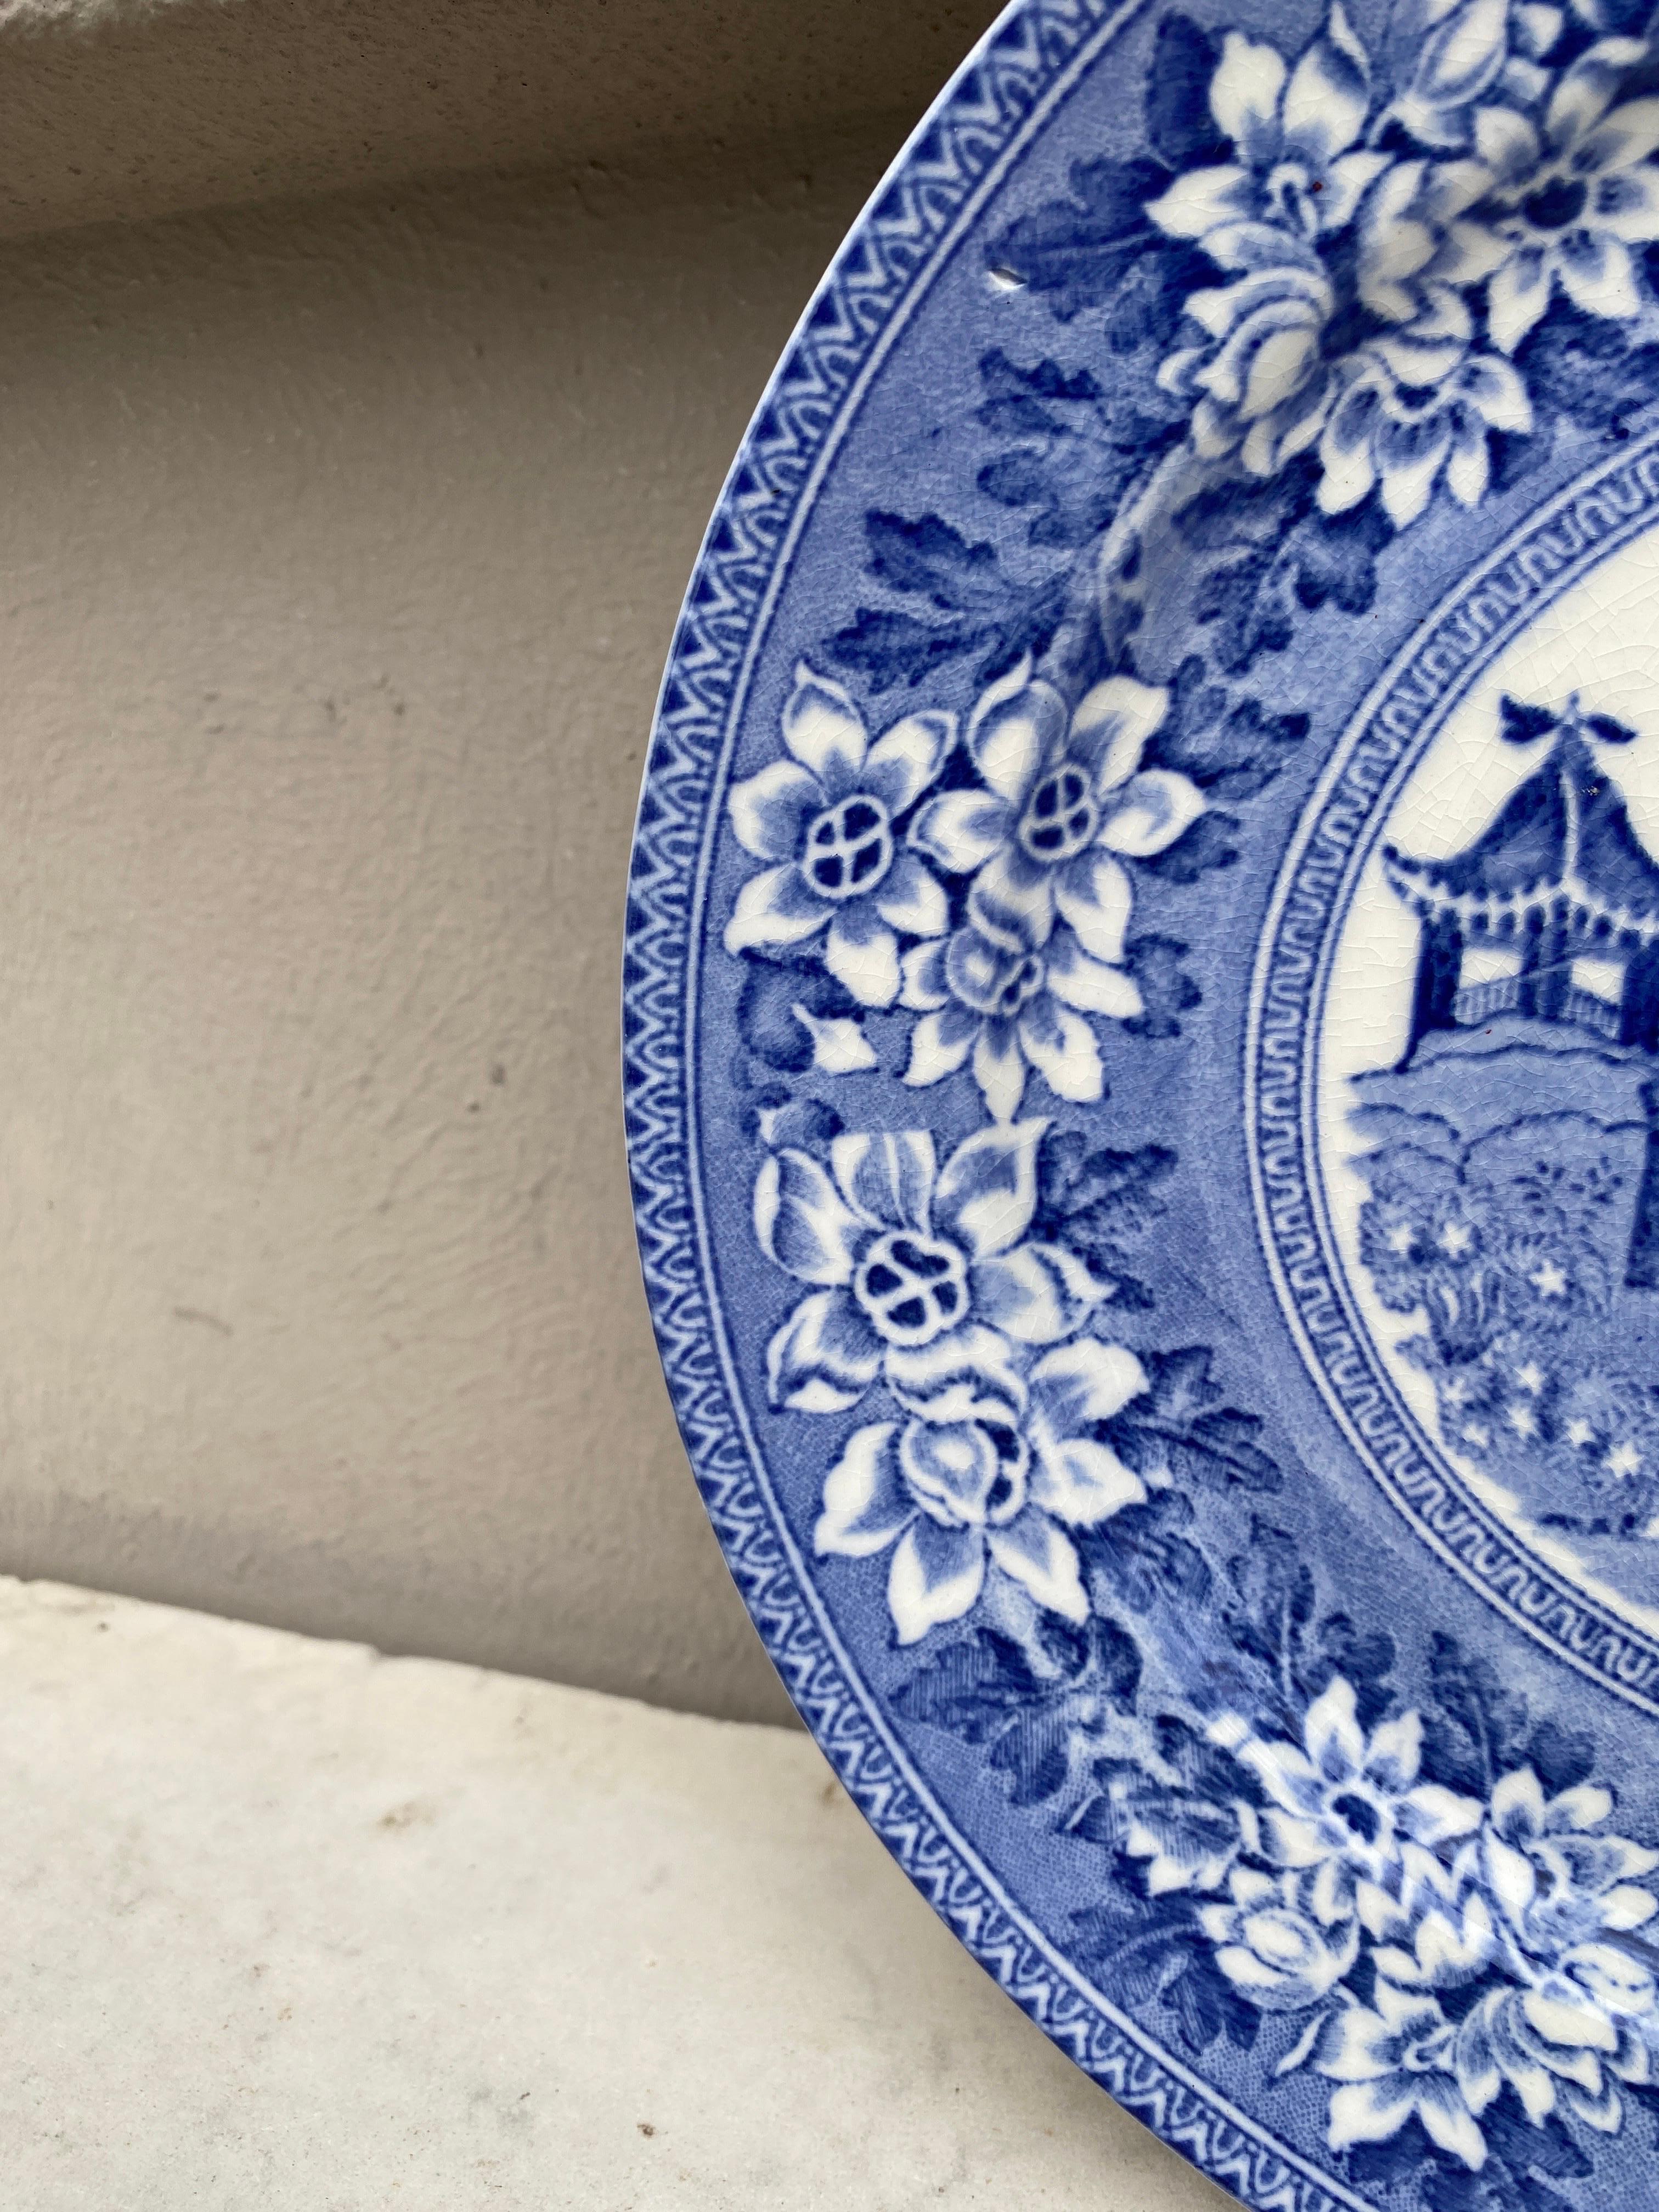 English blue & white plate signed Burslem.
1780 pattern Pagoda/elephant.
End of 19th century.
